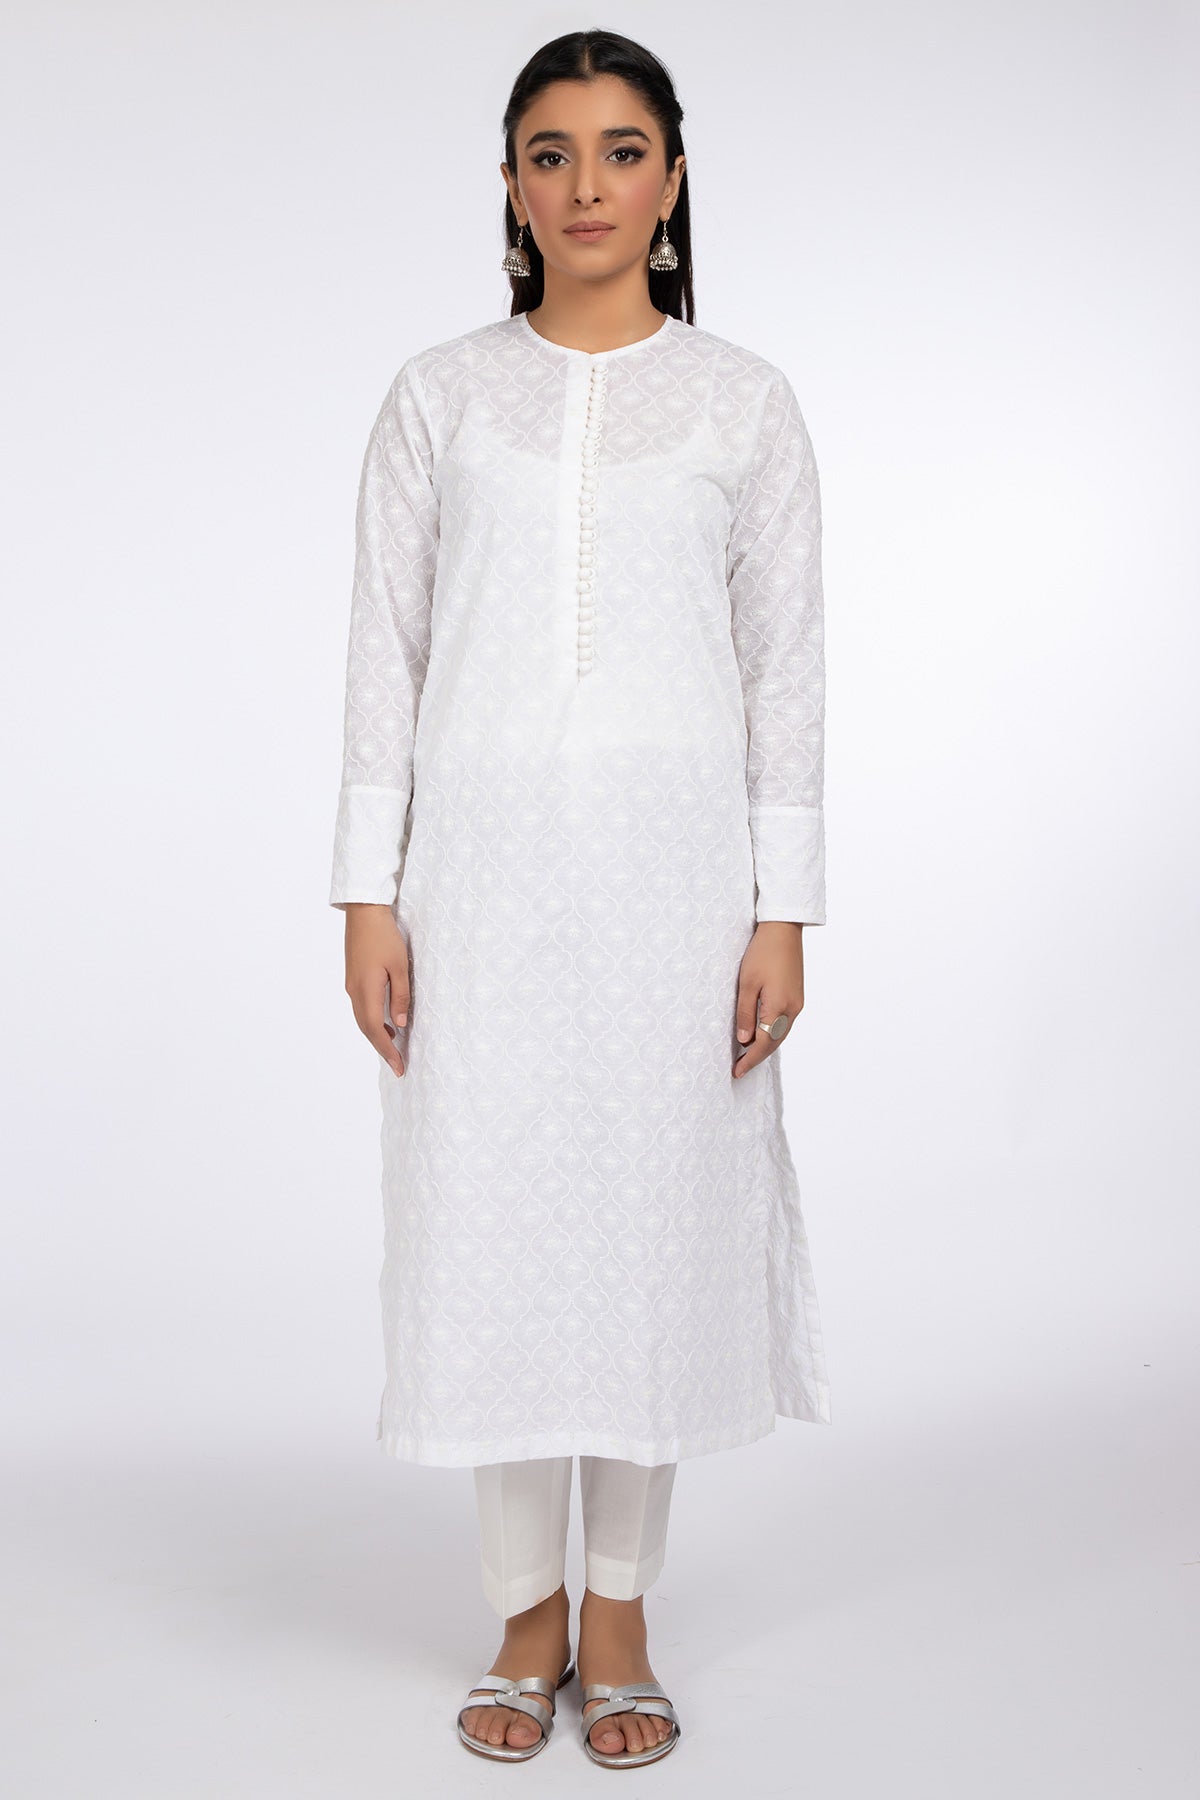 1 PIECE Cotton Lawan Shirt – Kayseria Pakistan